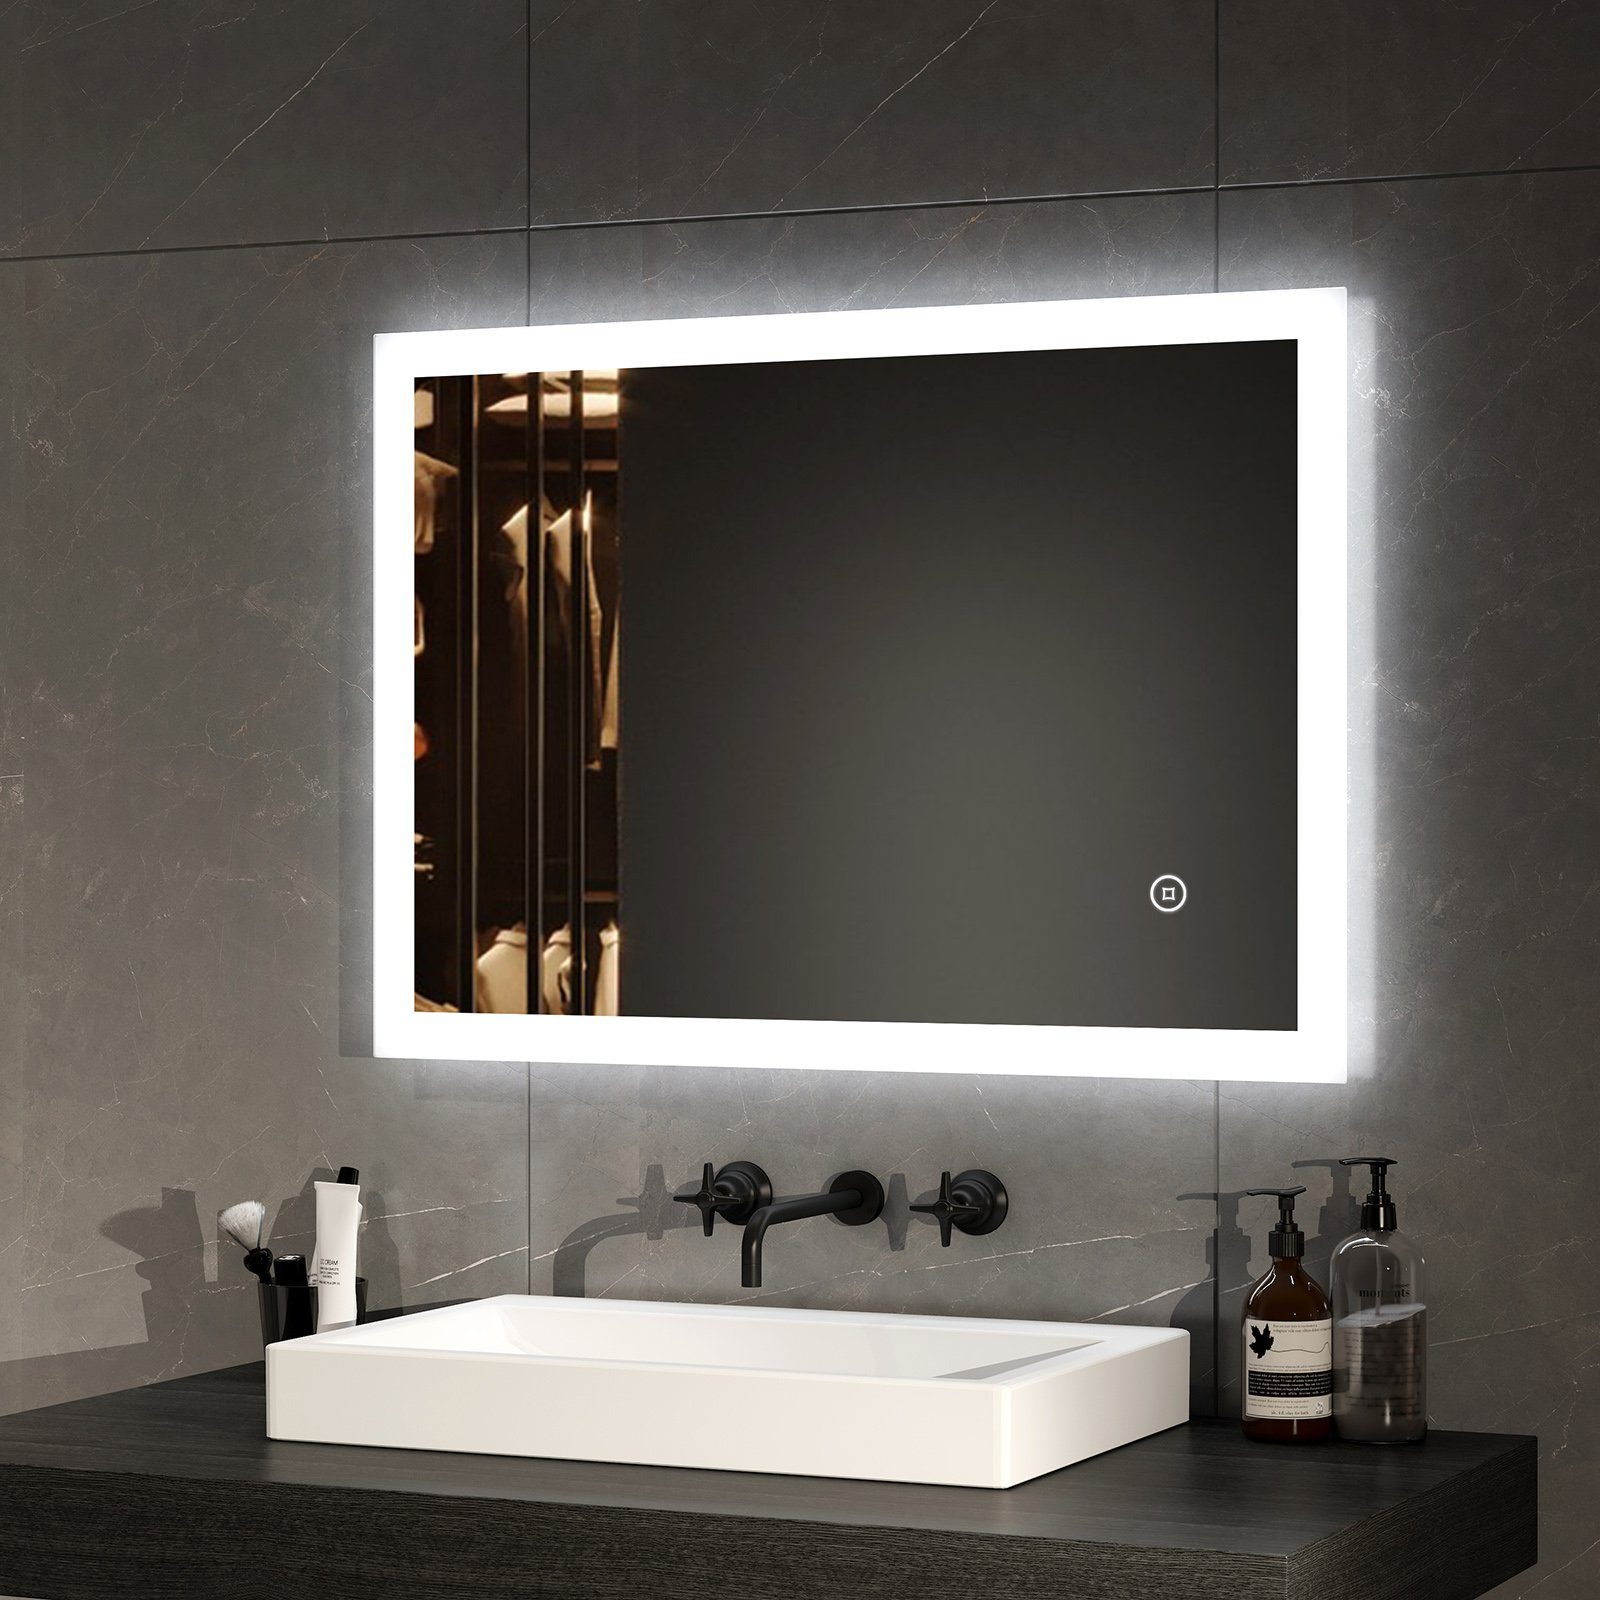 EMKE Badspiegel LED Badspiegel Badezimmerspiegel mit Beleuchtung (Vertikal und Horizontal möglich, Touch-schalter, Wandschalter), Kaltweißlicht Beschlagfrei IP44